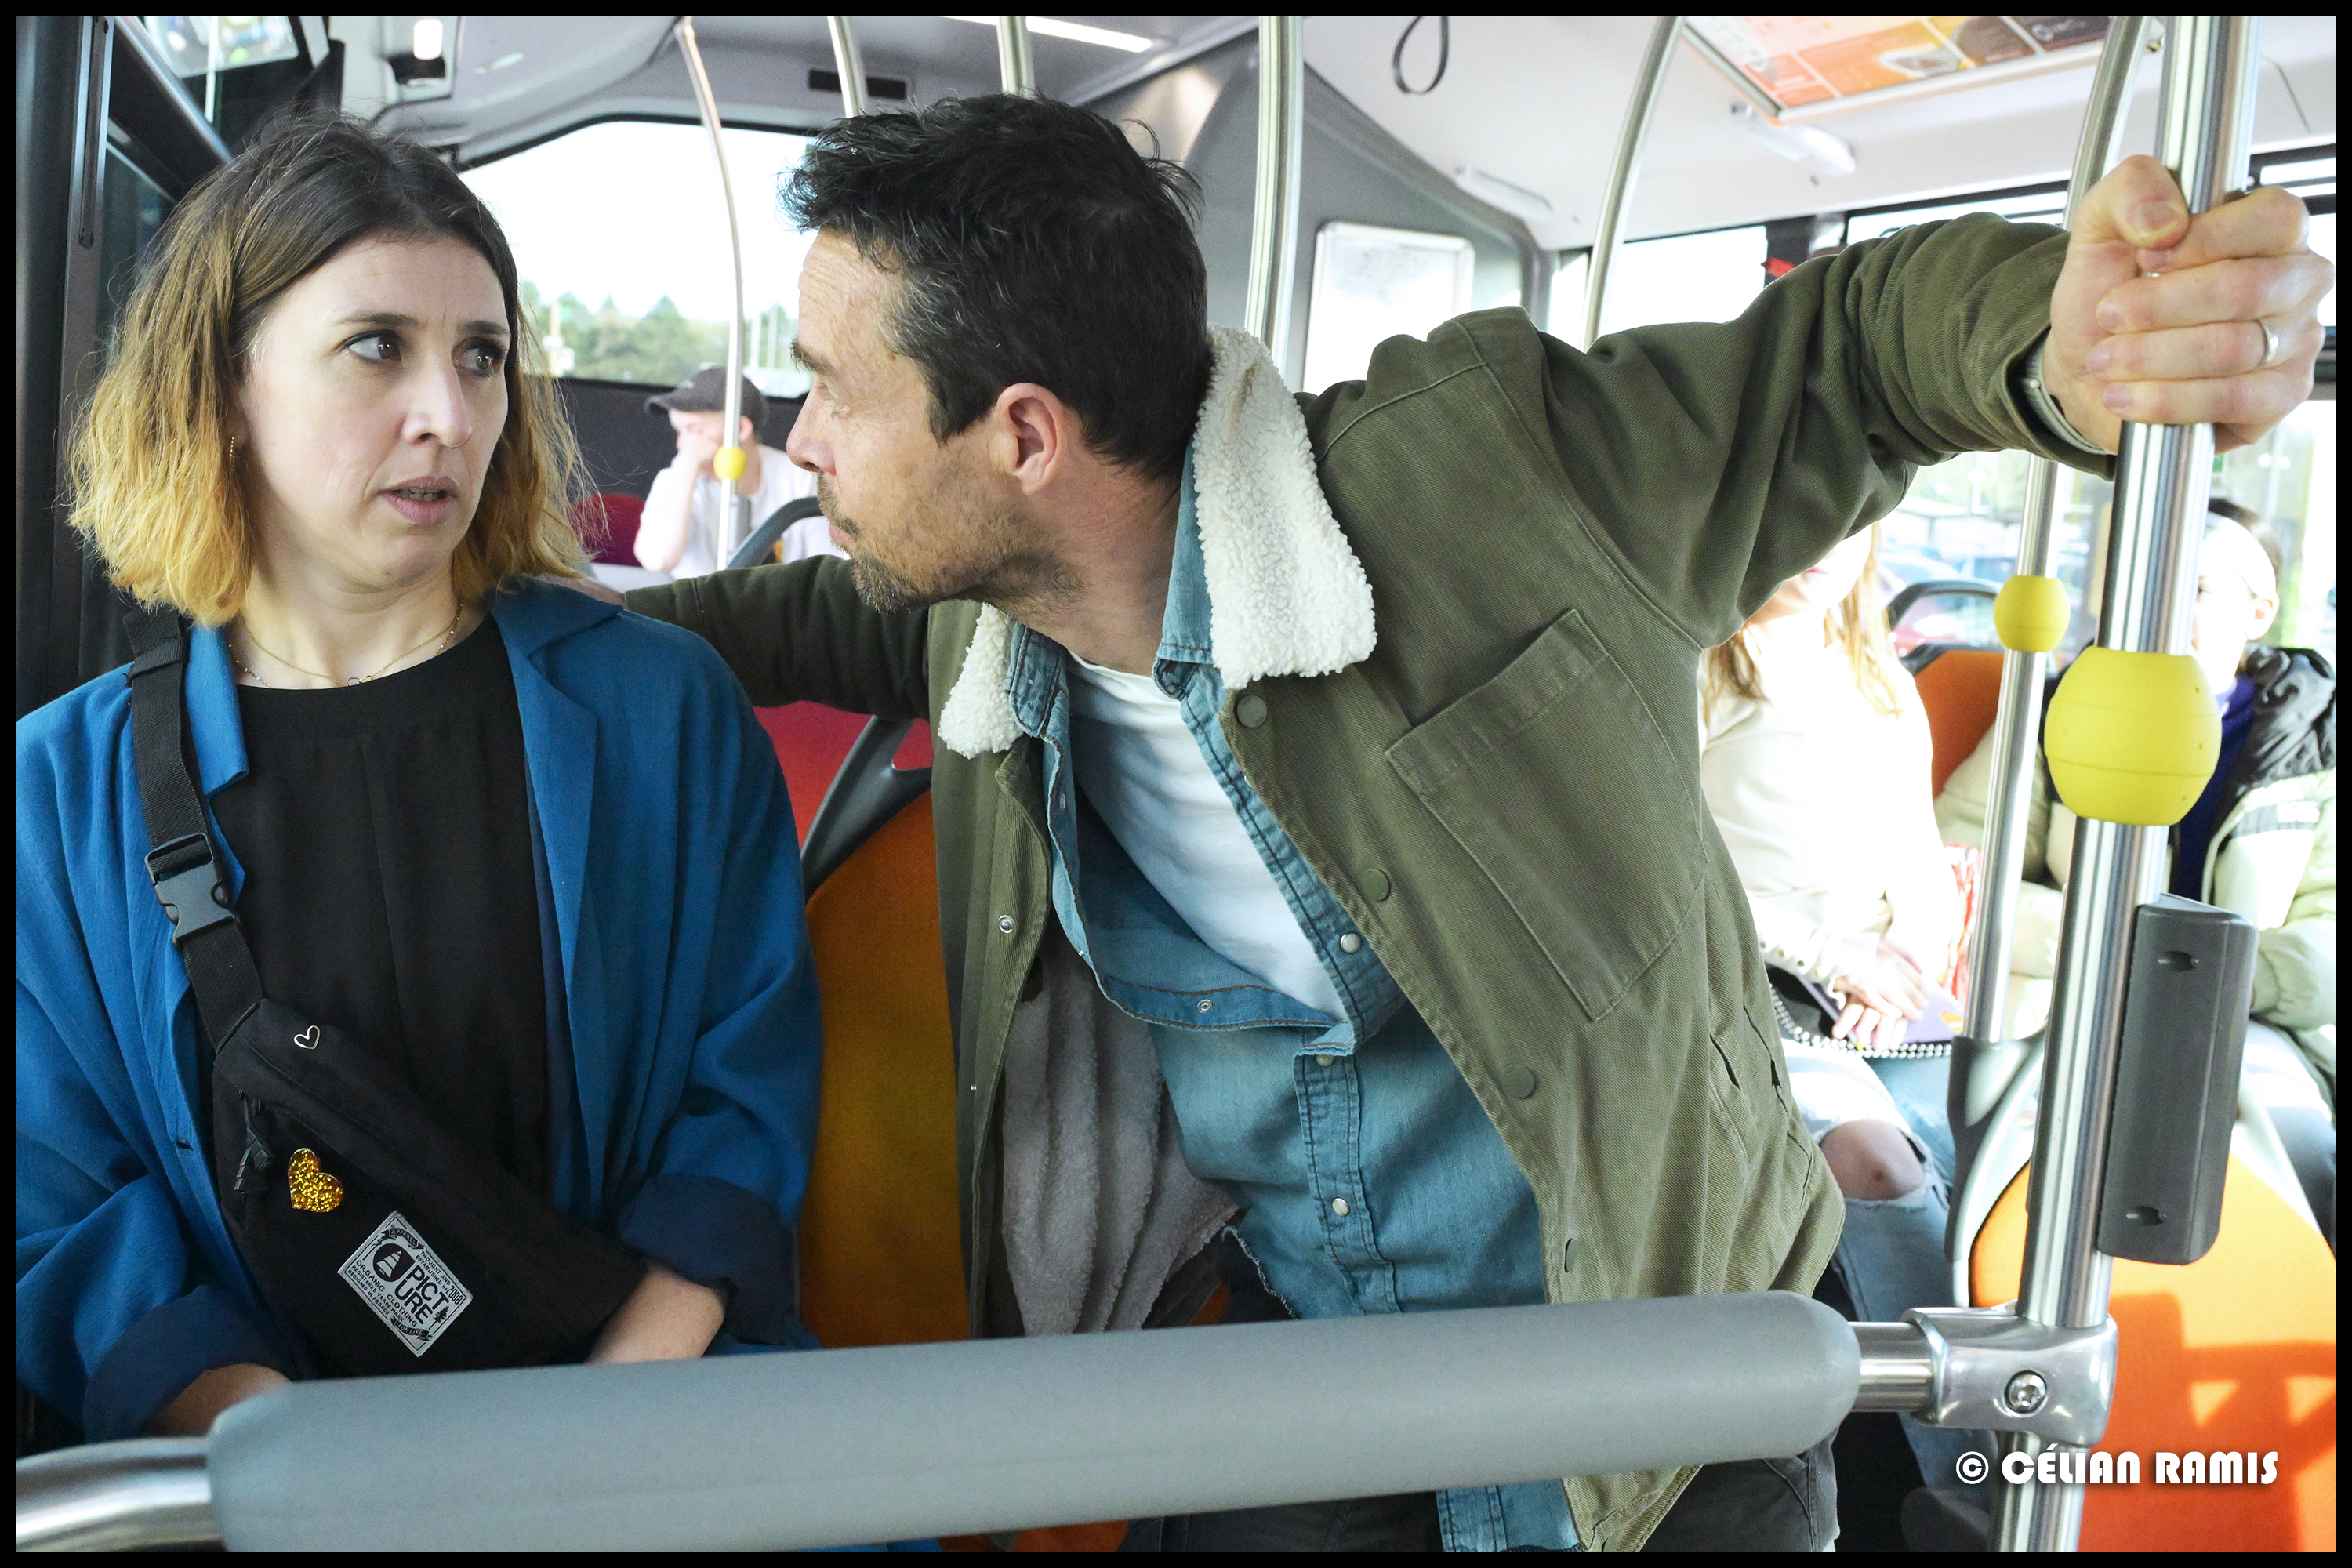 Une femme apeurée dans le bus par un homme qui l'agresse verbalement mais aussi de sa présence invasive